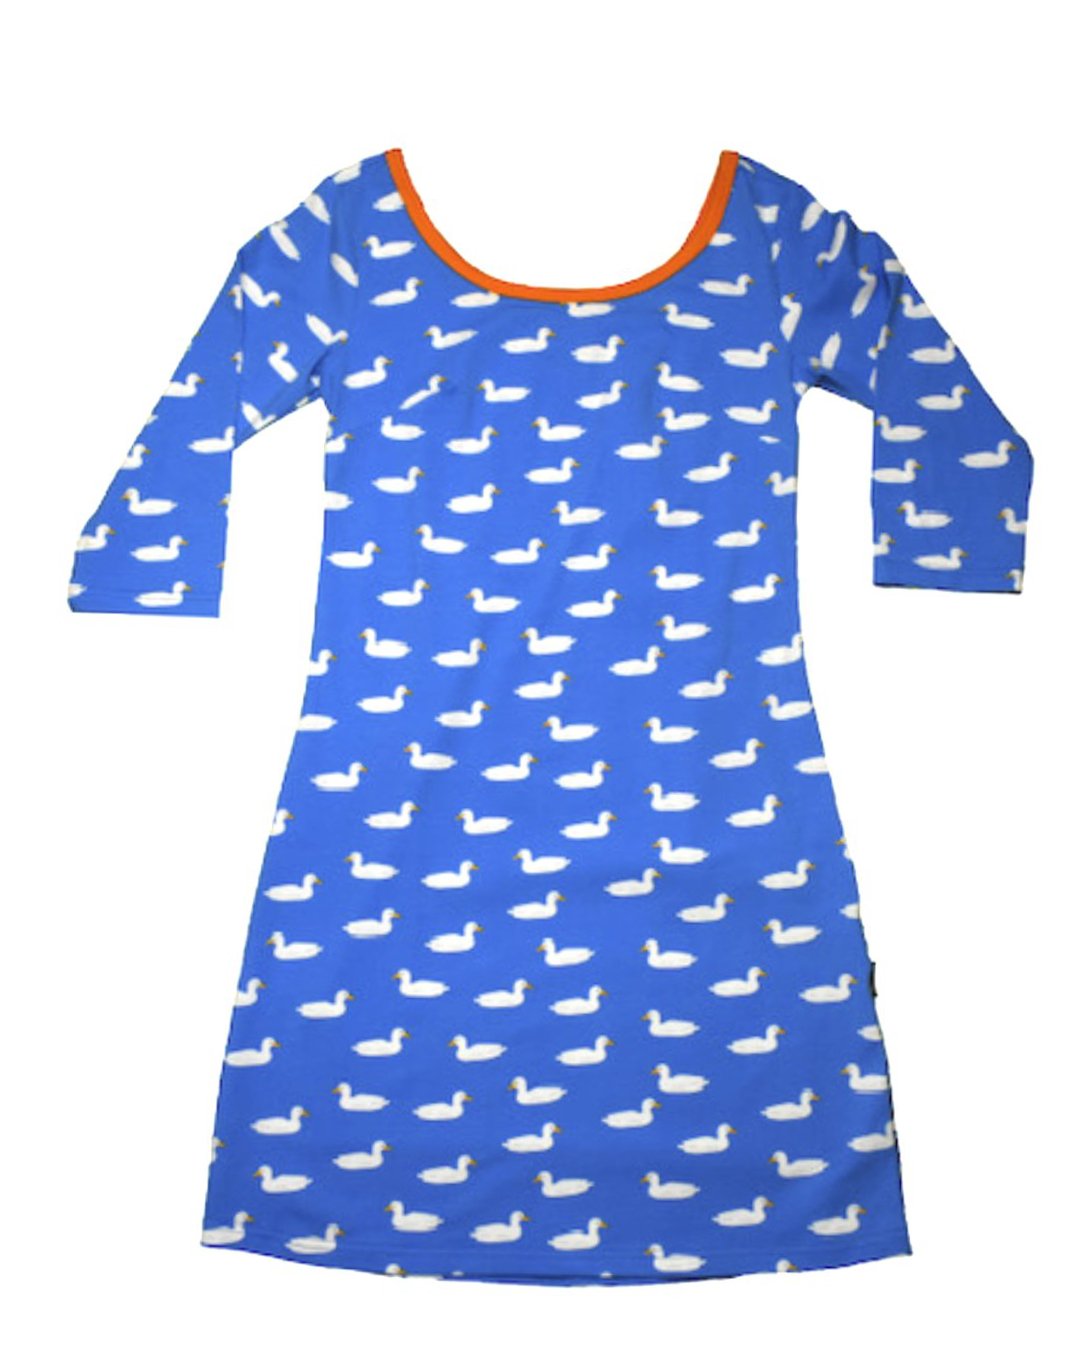 Blaues Damen Shirt-Kleid mit weißen Enten aus Biobaumwolle mit moromini